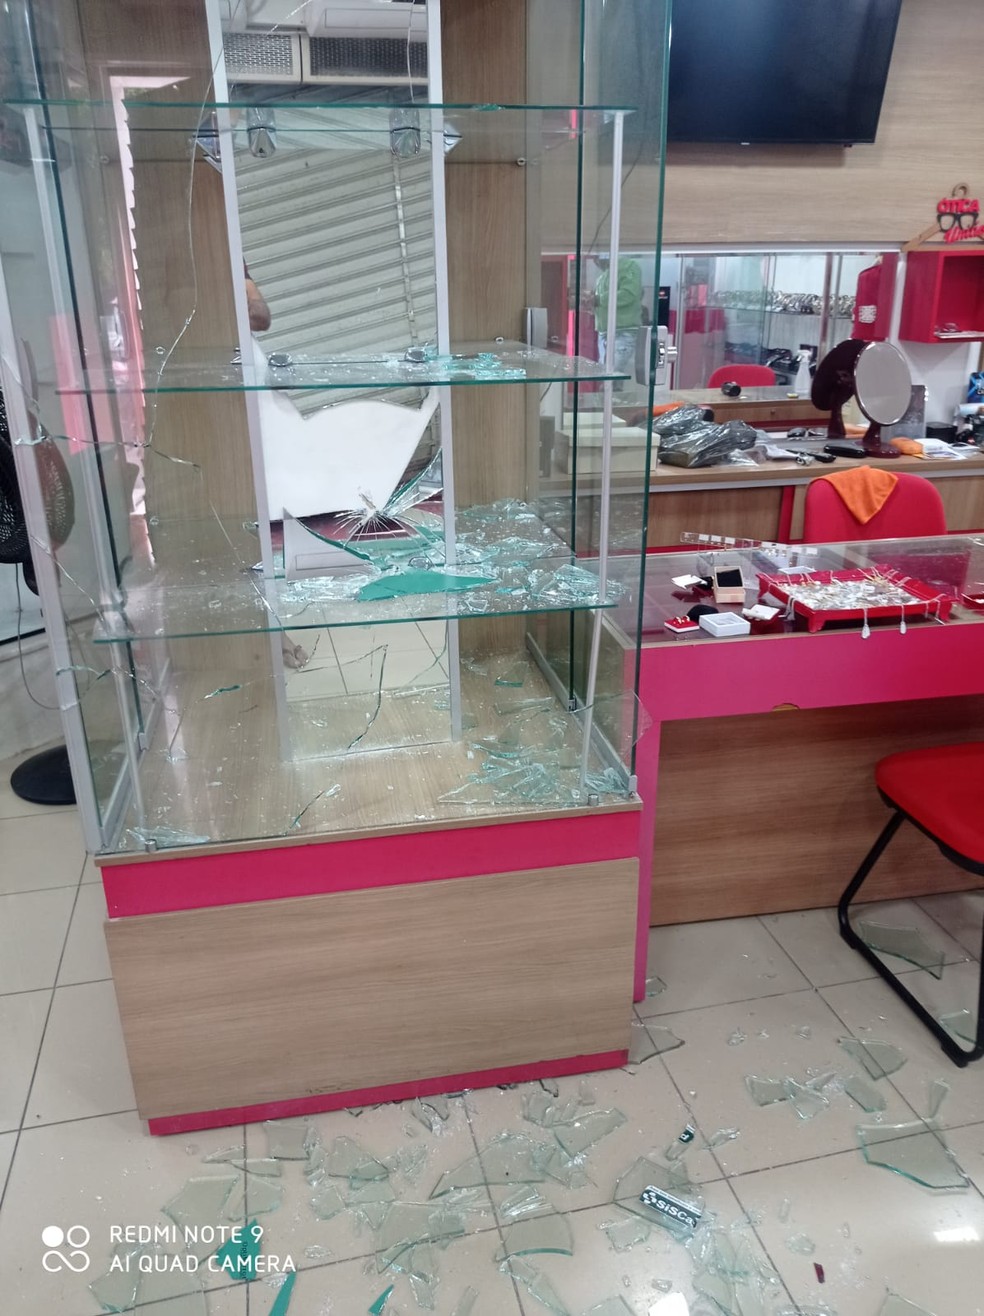 Estantes de vidro onde estavam as joias furtadas foram quebradas pelos criminosos na joalheria em União dos Palmares, Alagoas — Foto: Polícia Civil